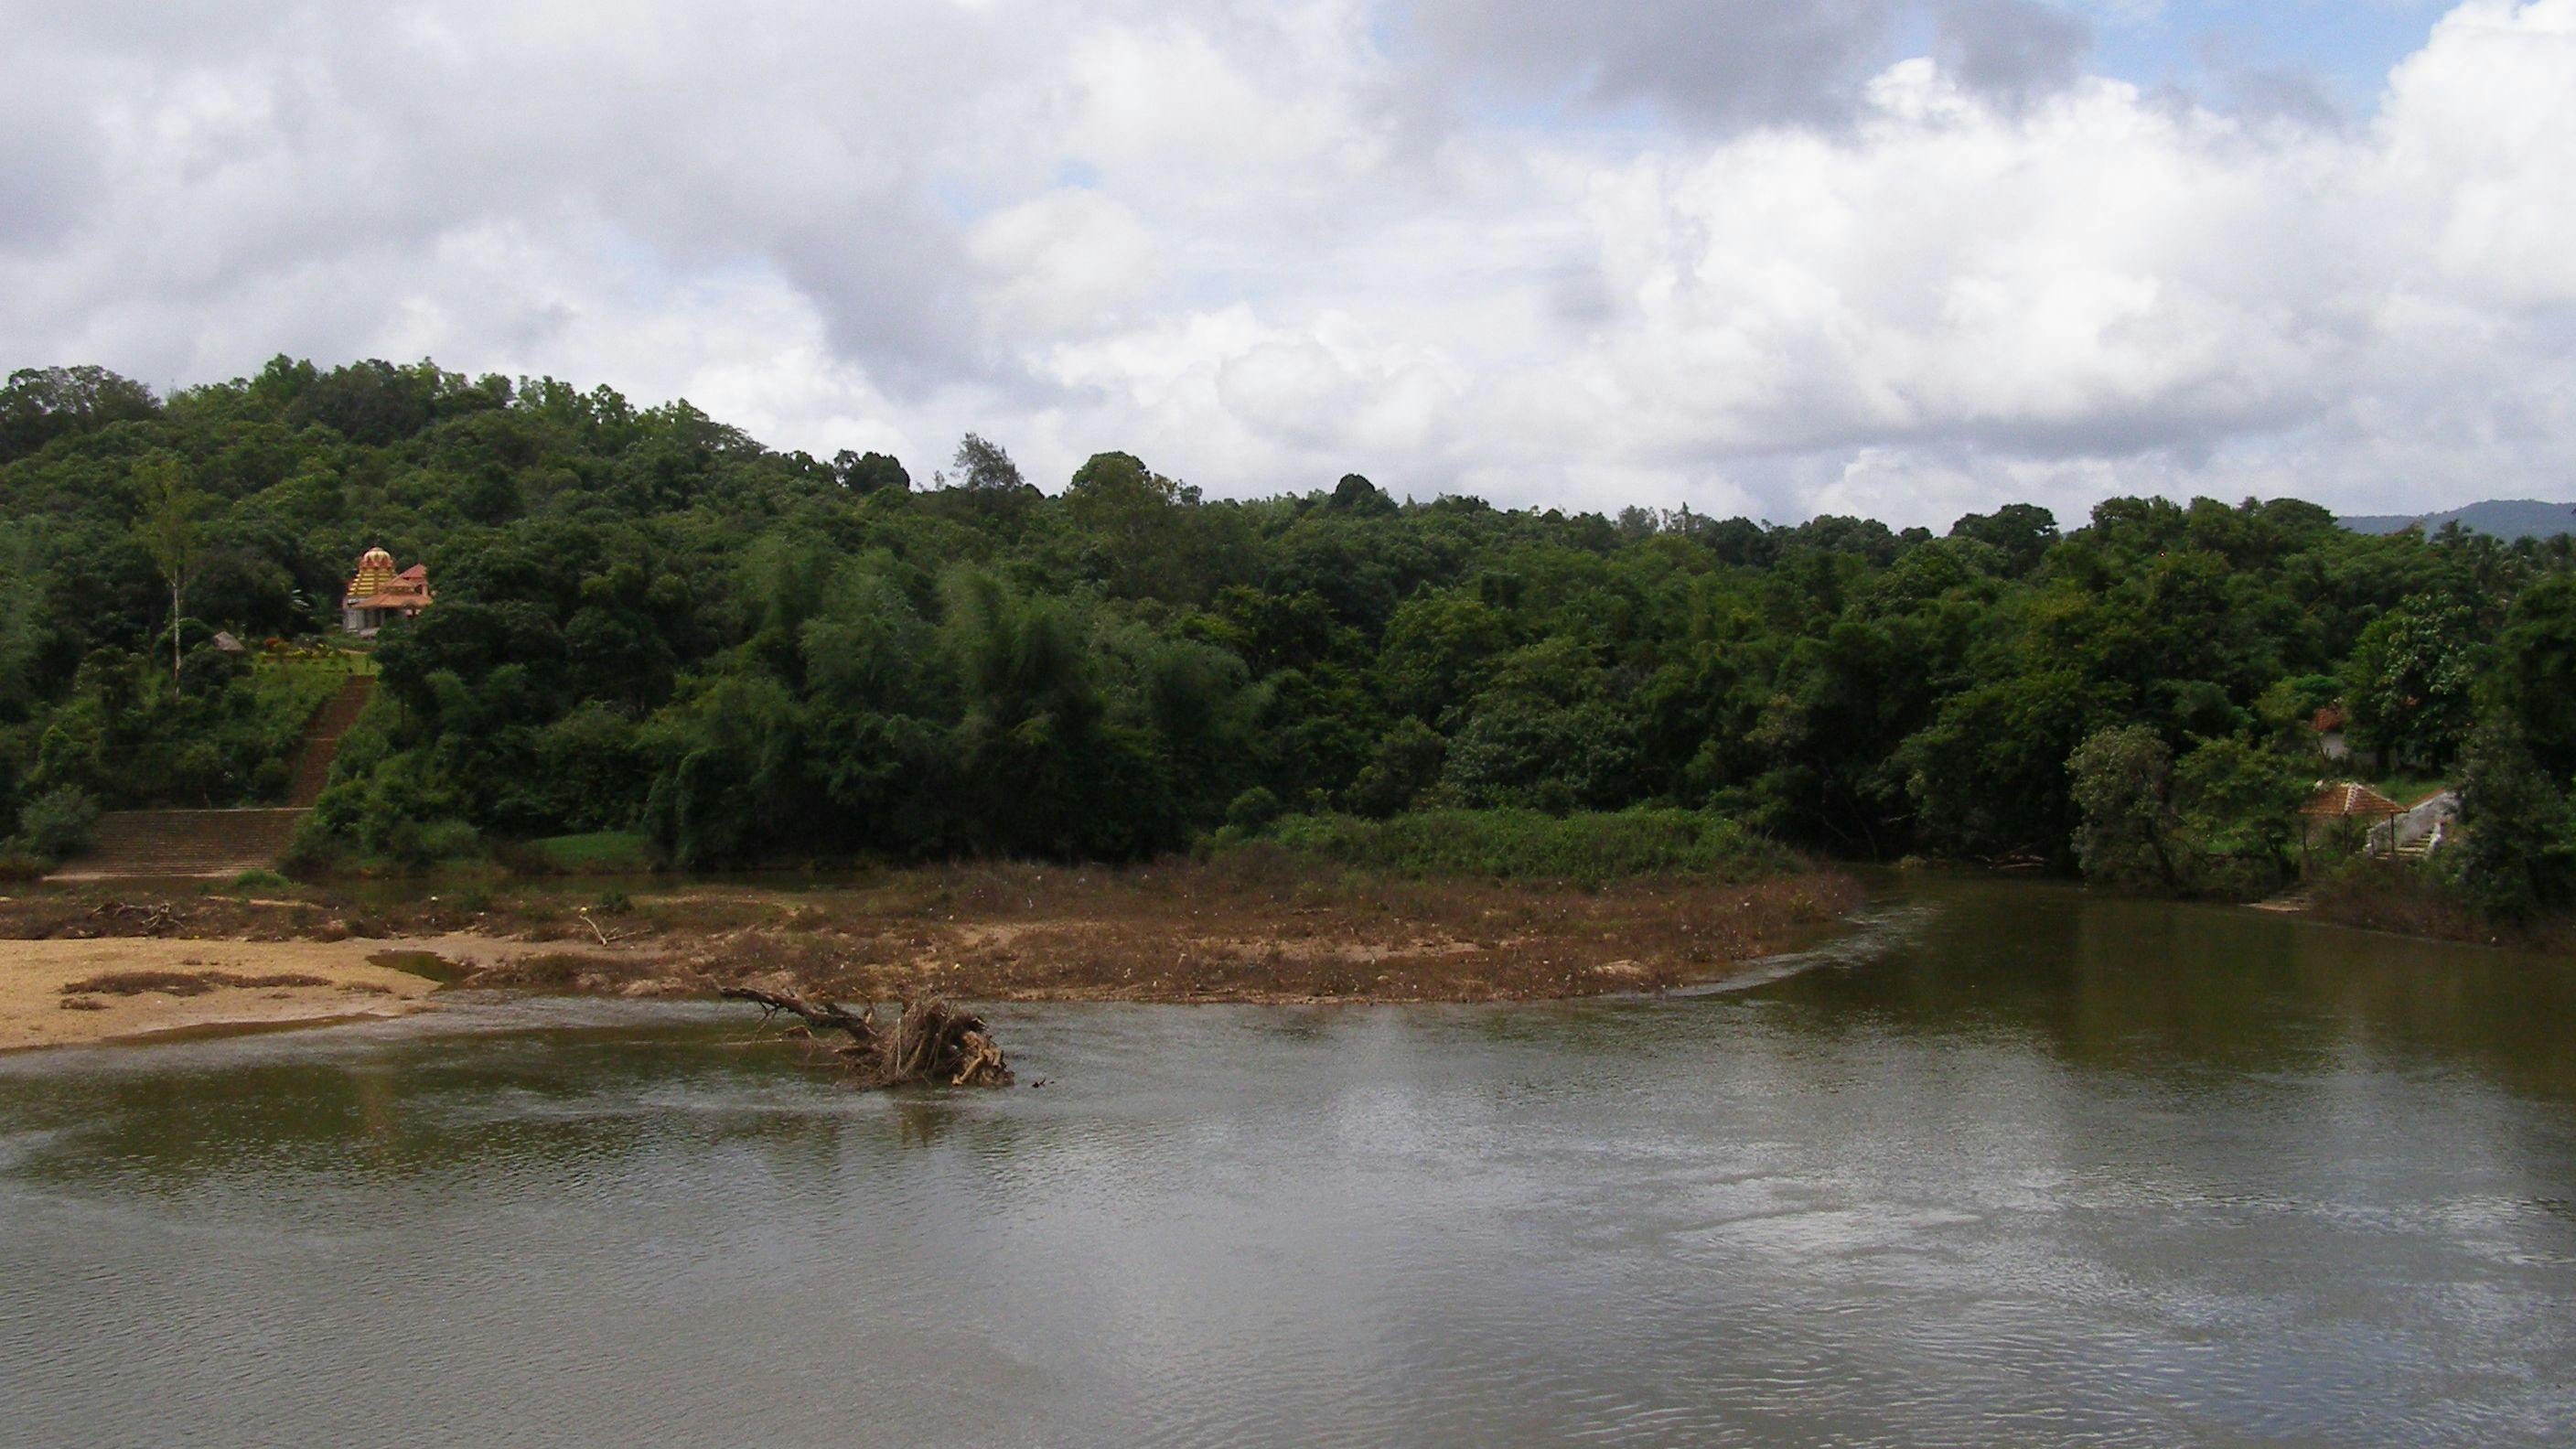 The Tunga River